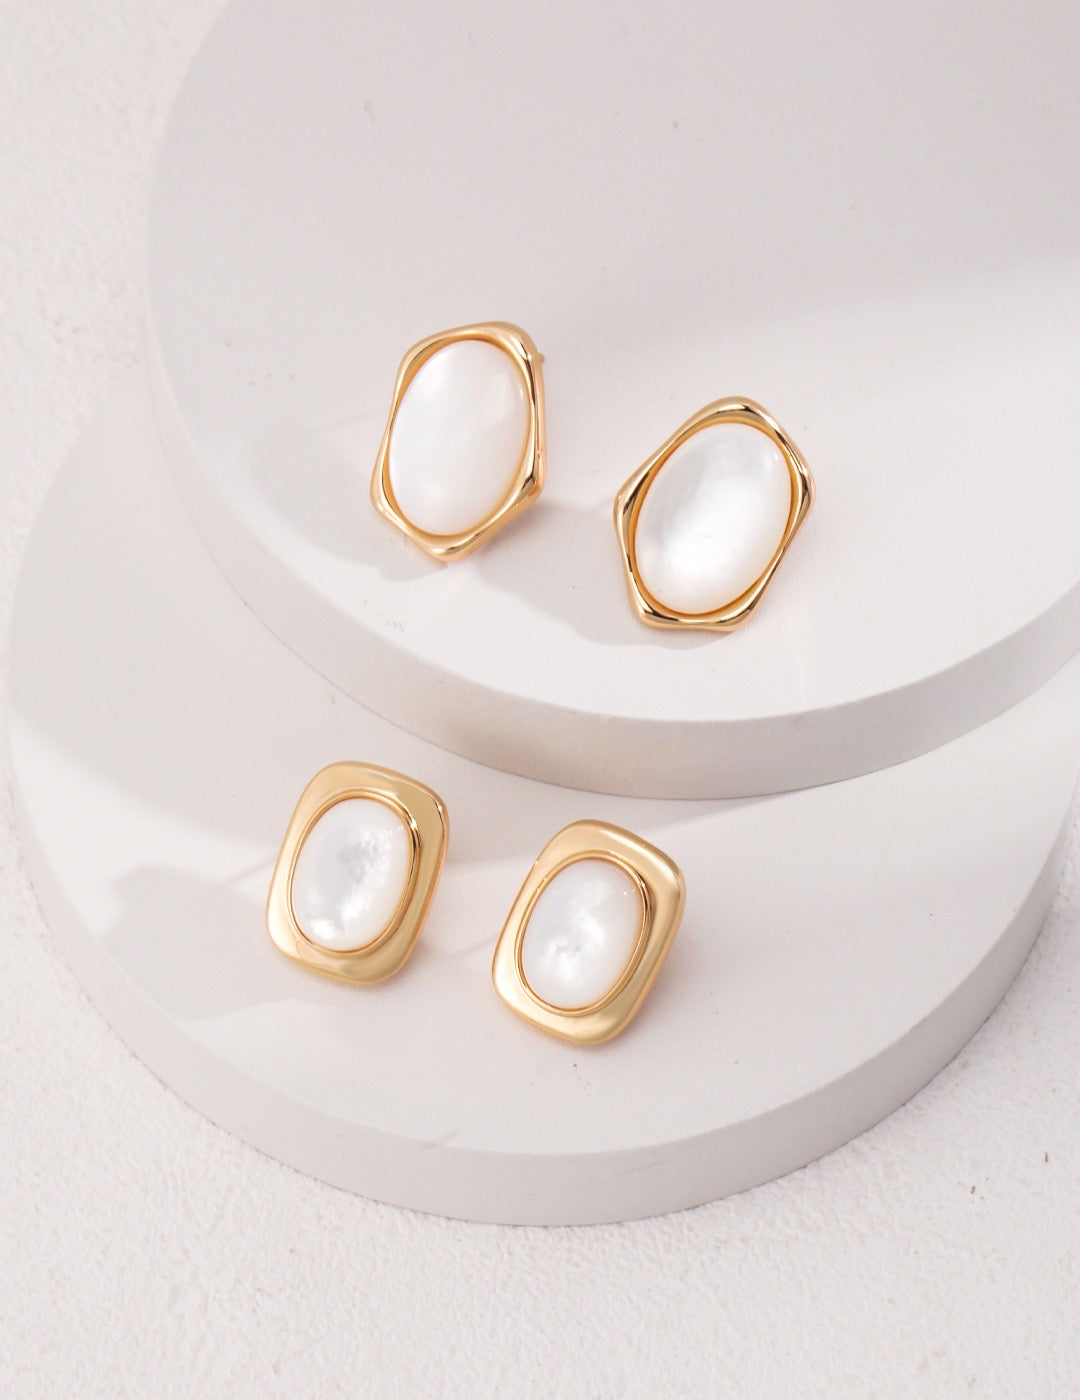 Mother of Pearl Flower Earrings | Pearl earrings | Gold earrings | mother of pearl stud earrings silver